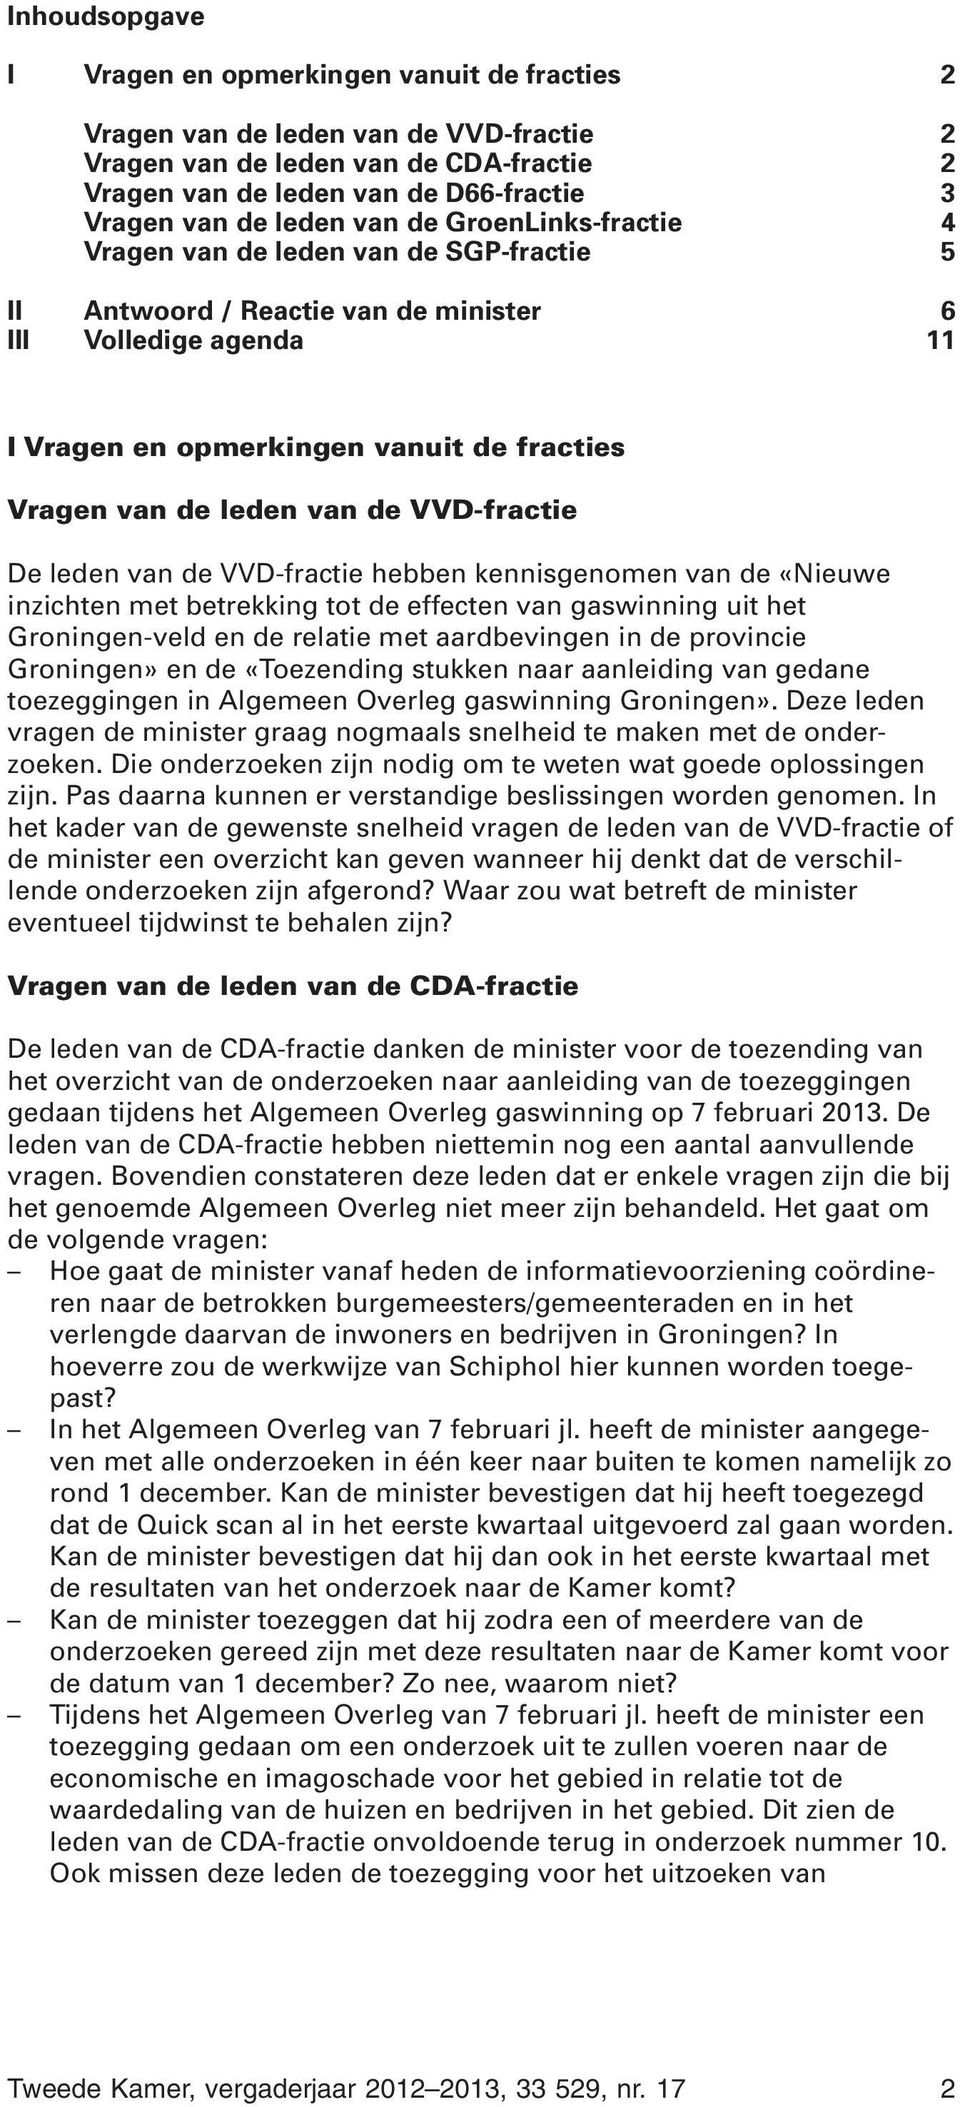 leden van de VVD-fractie De leden van de VVD-fractie hebben kennisgenomen van de «Nieuwe inzichten met betrekking tot de effecten van gaswinning uit het Groningen-veld en de relatie met aardbevingen